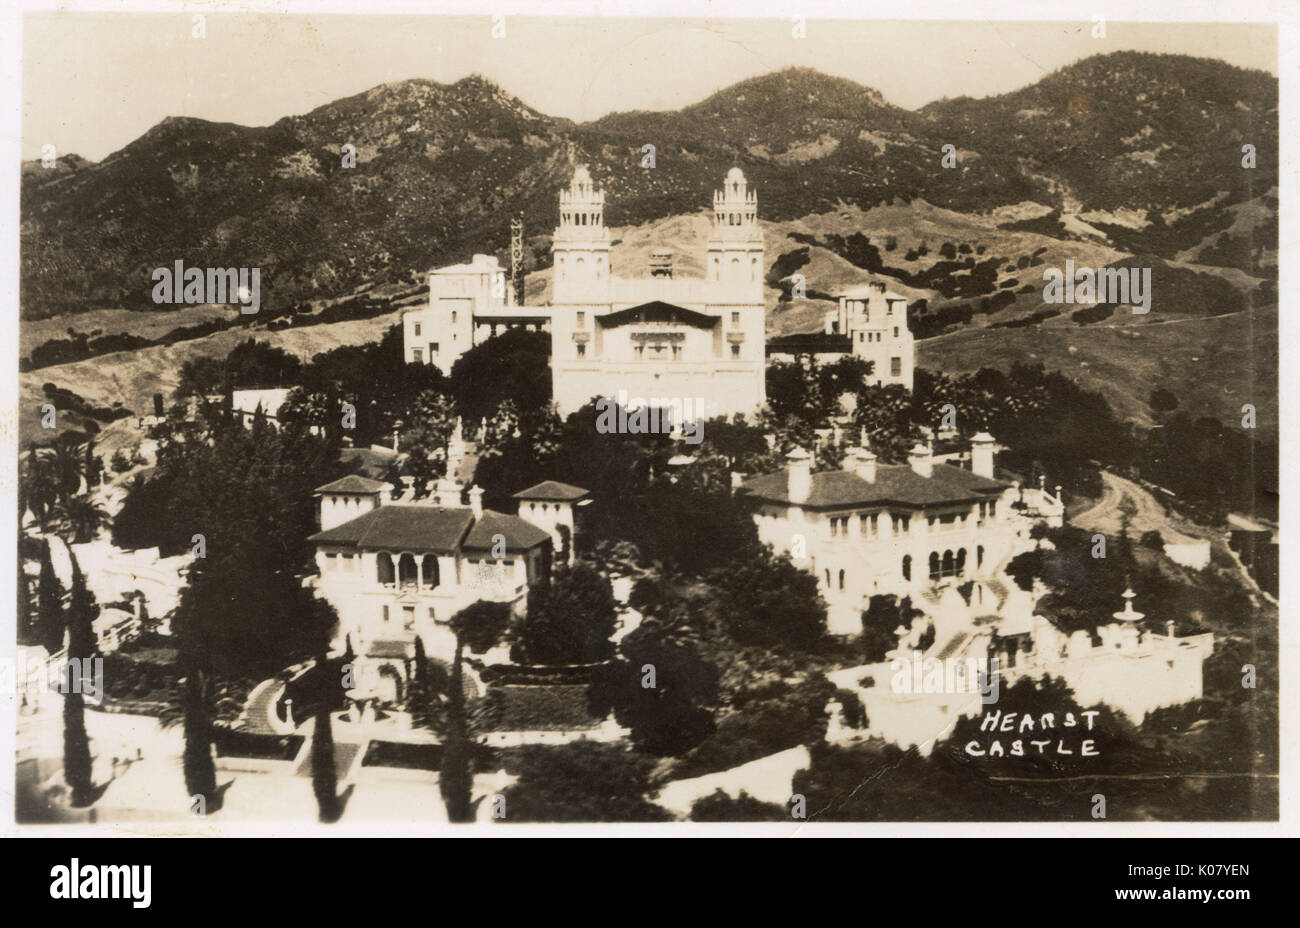 Hearst Castle, San Simeon, San Luis Obispo, Californie, États-Unis Banque D'Images